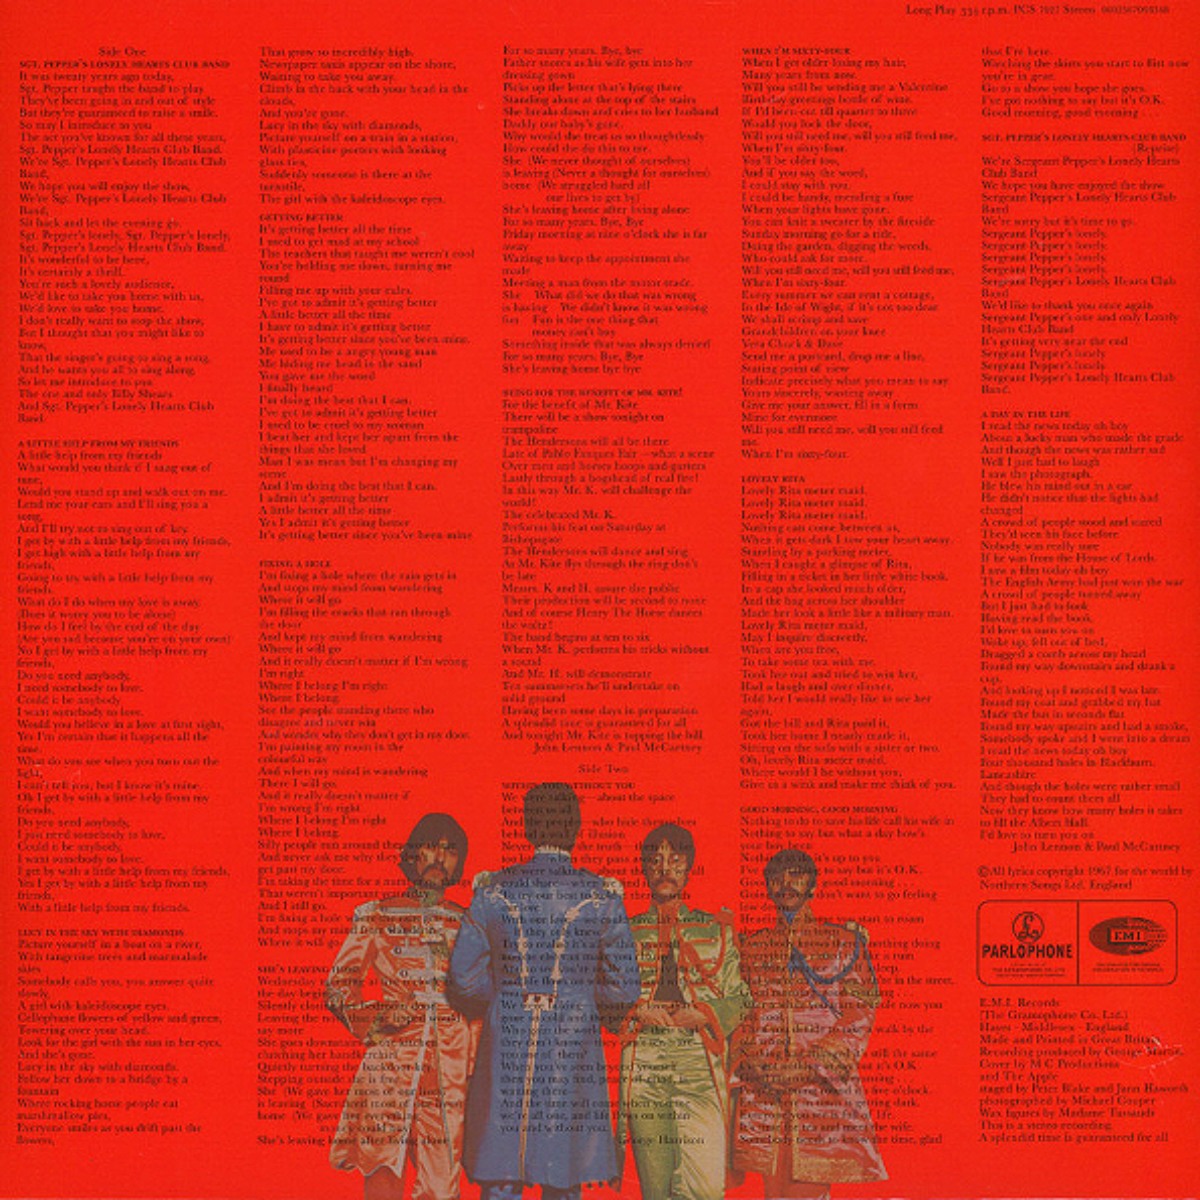 Couverture de "Sgt. Pepper's Lonely Hearts Club Band" des Beatles, dos de la pochette.